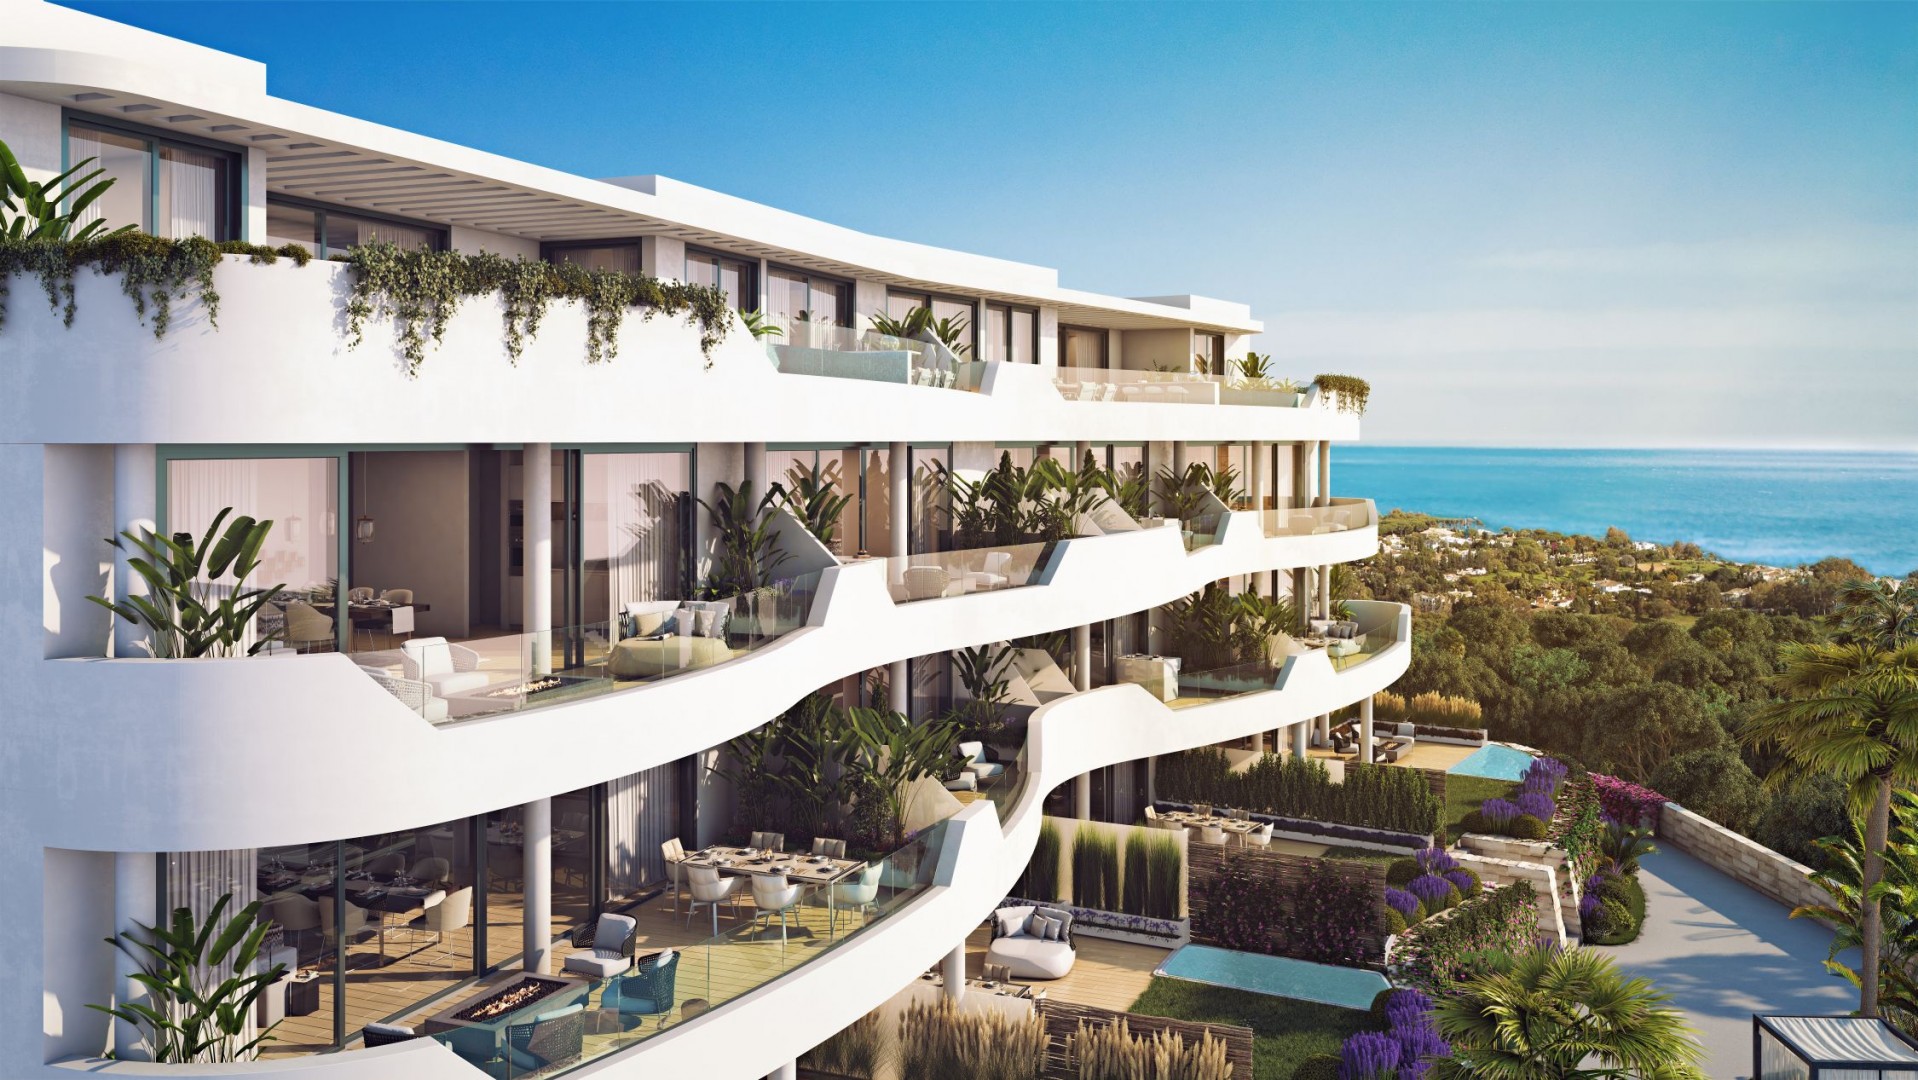 Prachtig ontworpen eigentijdse appartementen met uitzicht over de kust van Fuengirola.PL73